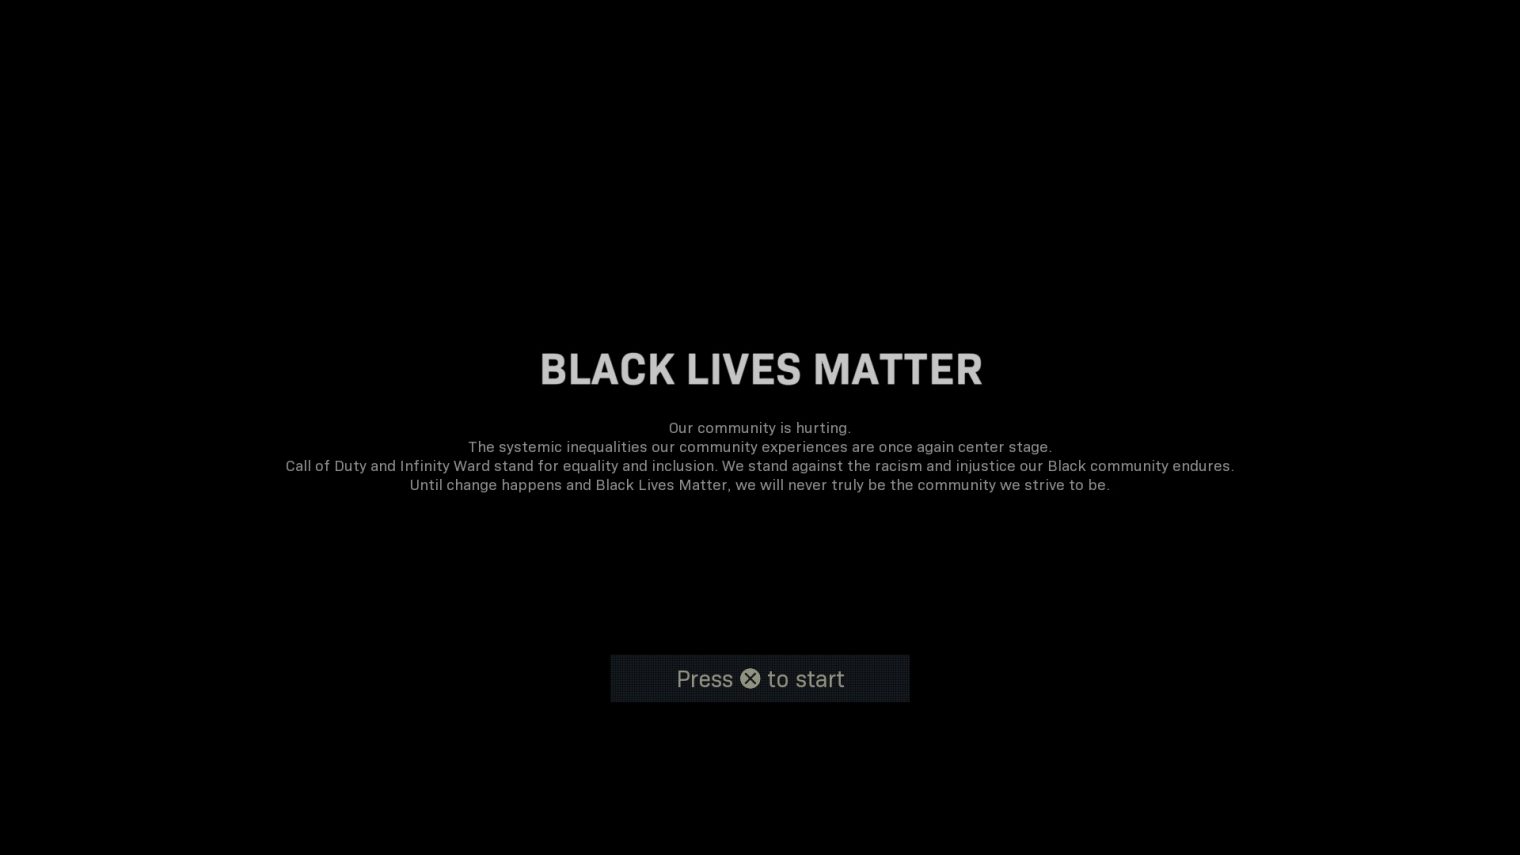 Nahrávací obrazovka Call of Duty podporuje anti-rasistické sdružení